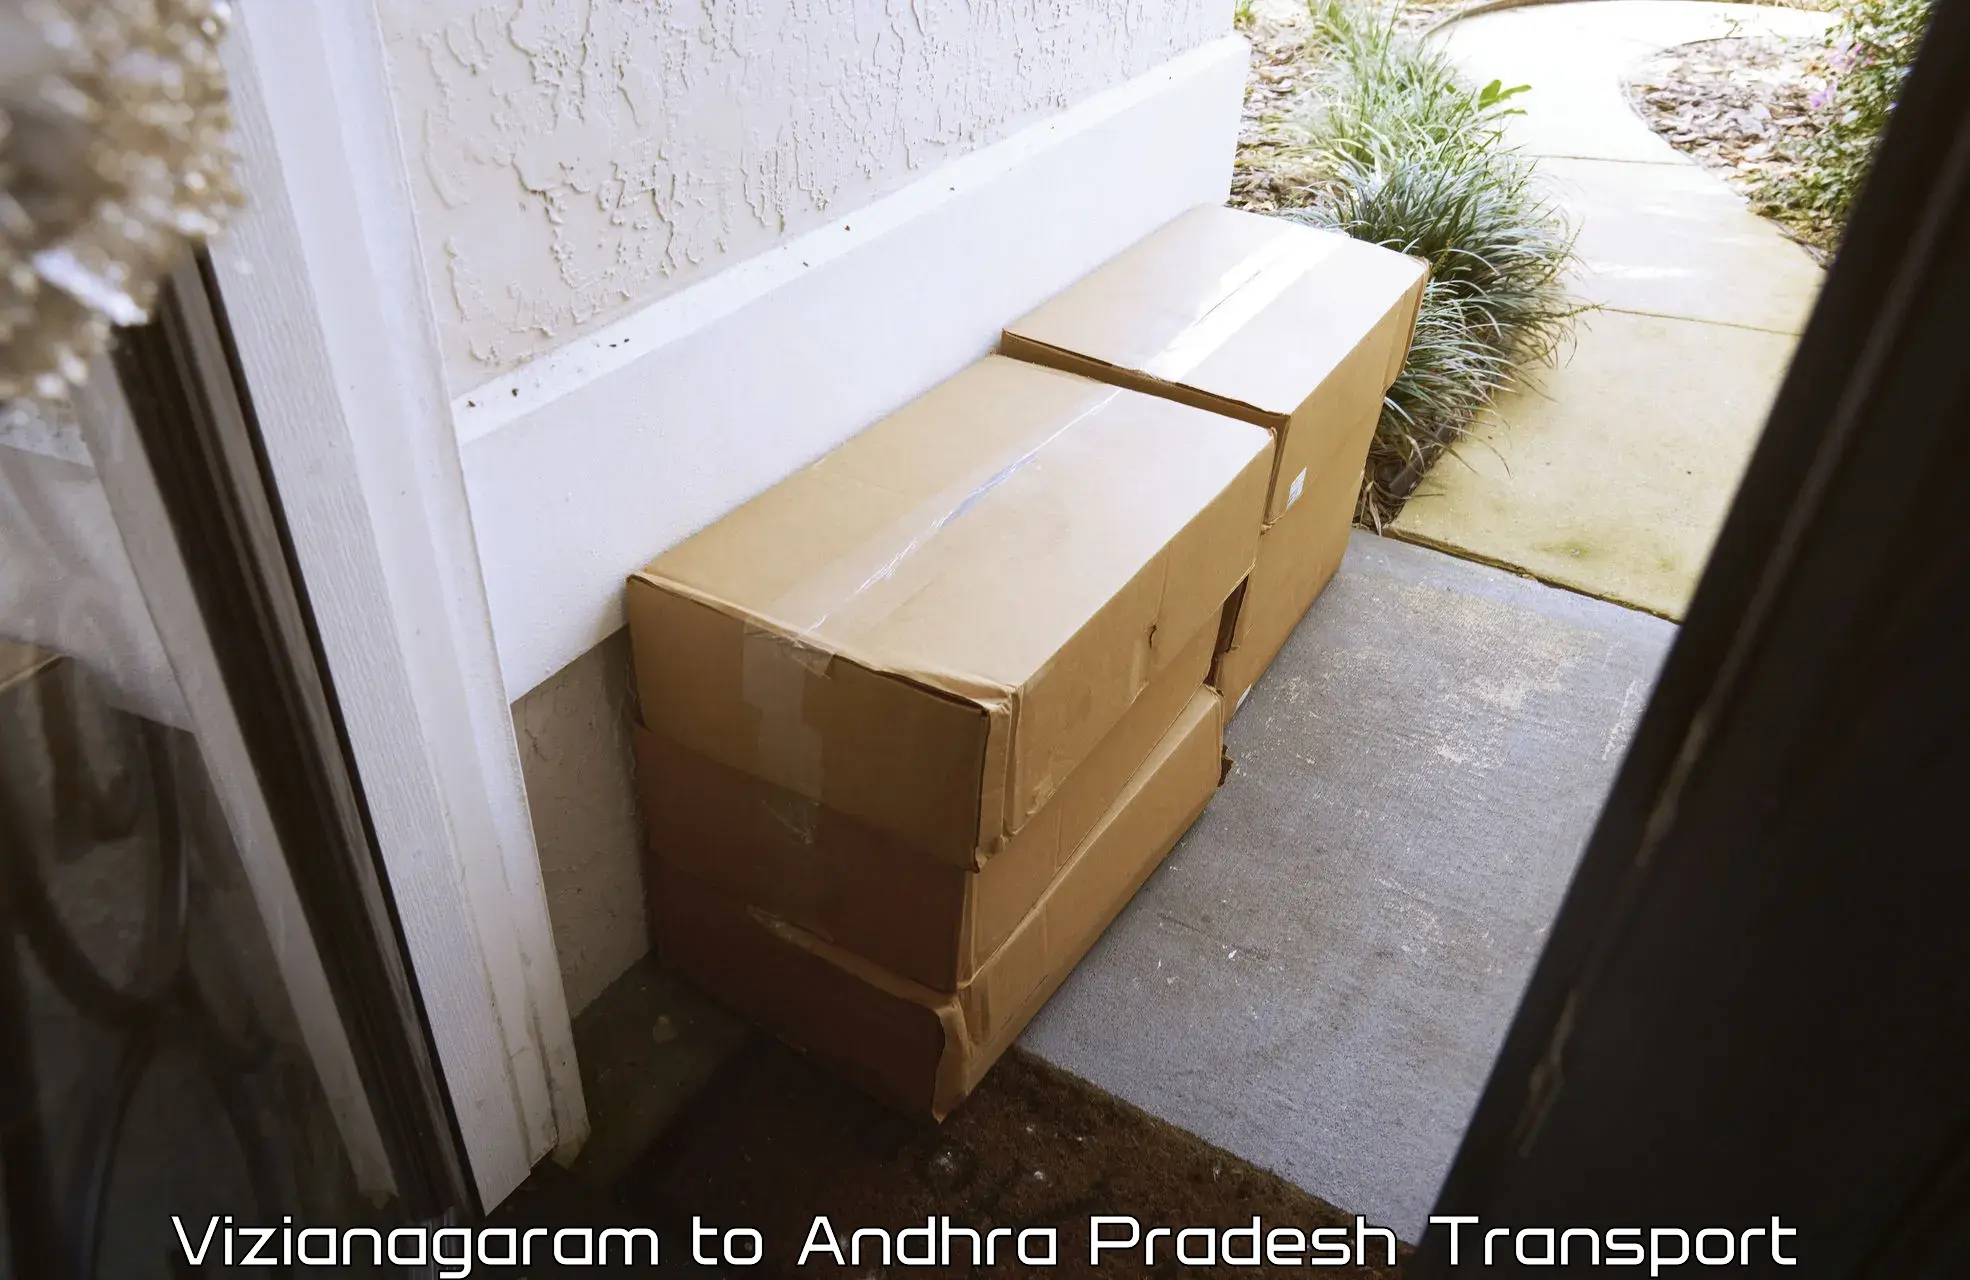 Air freight transport services Vizianagaram to Andhra Pradesh